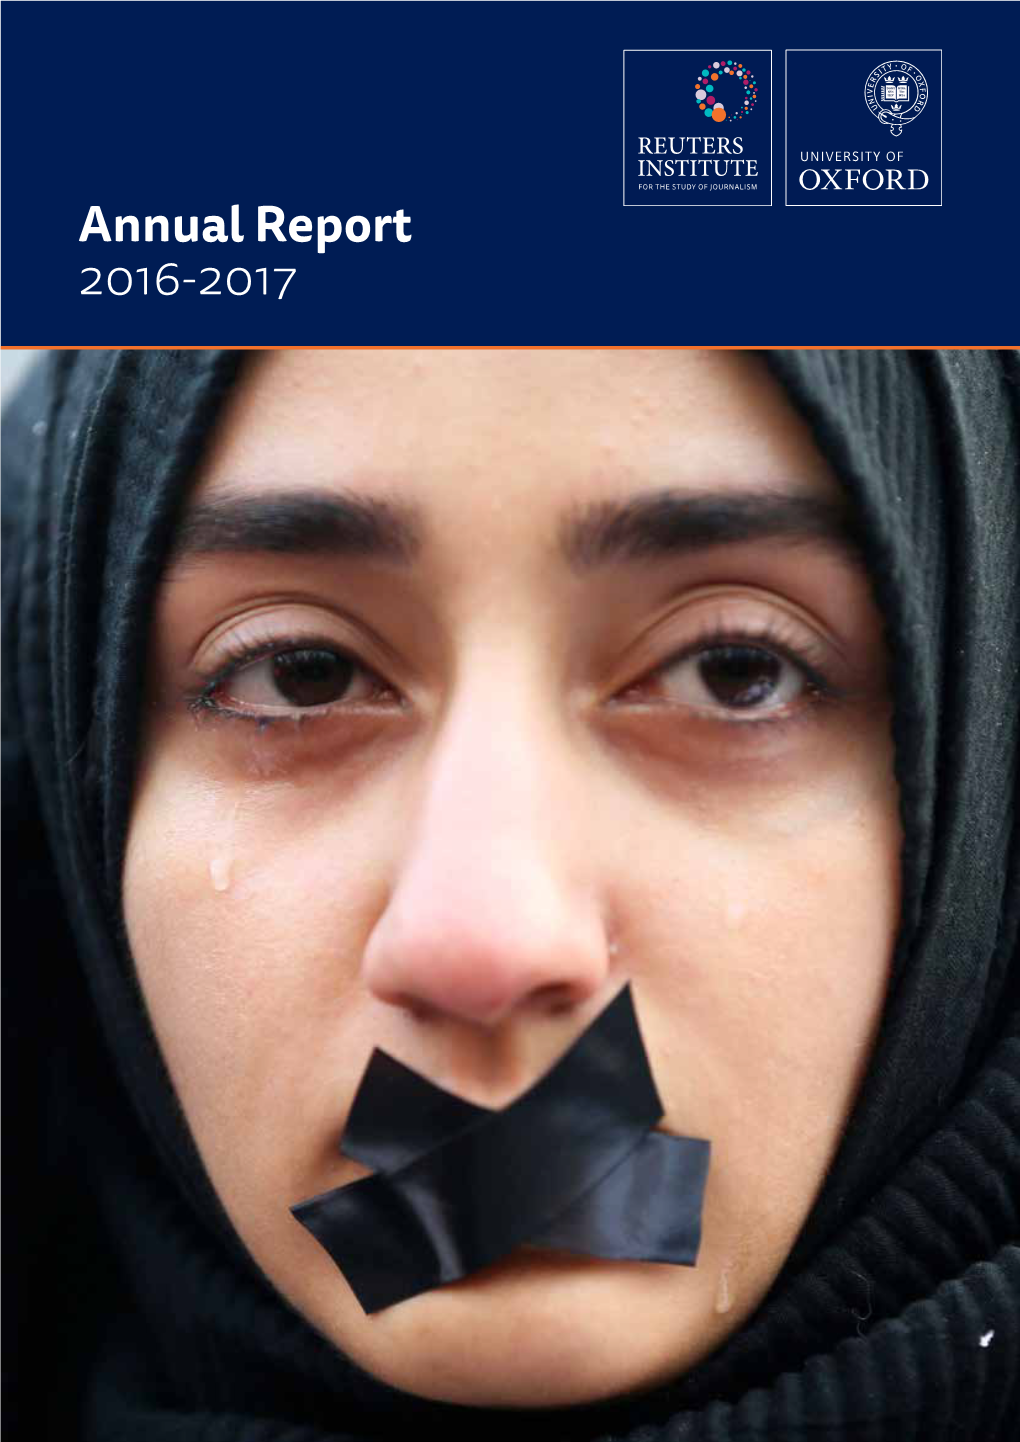 Download RISJ Annual Report 2016-2017